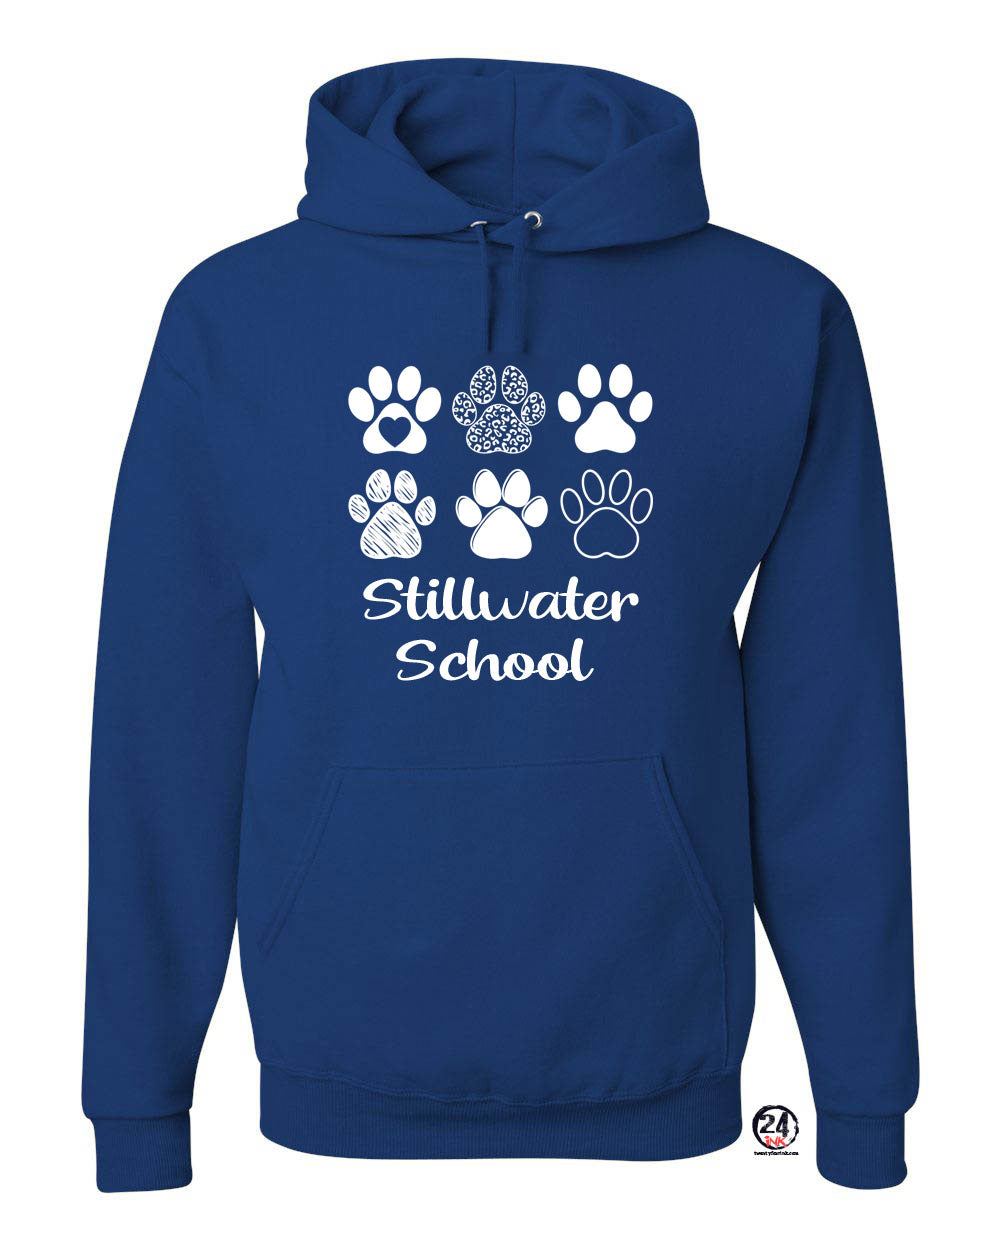 Stillwater Design 20 Hooded Sweatshirt